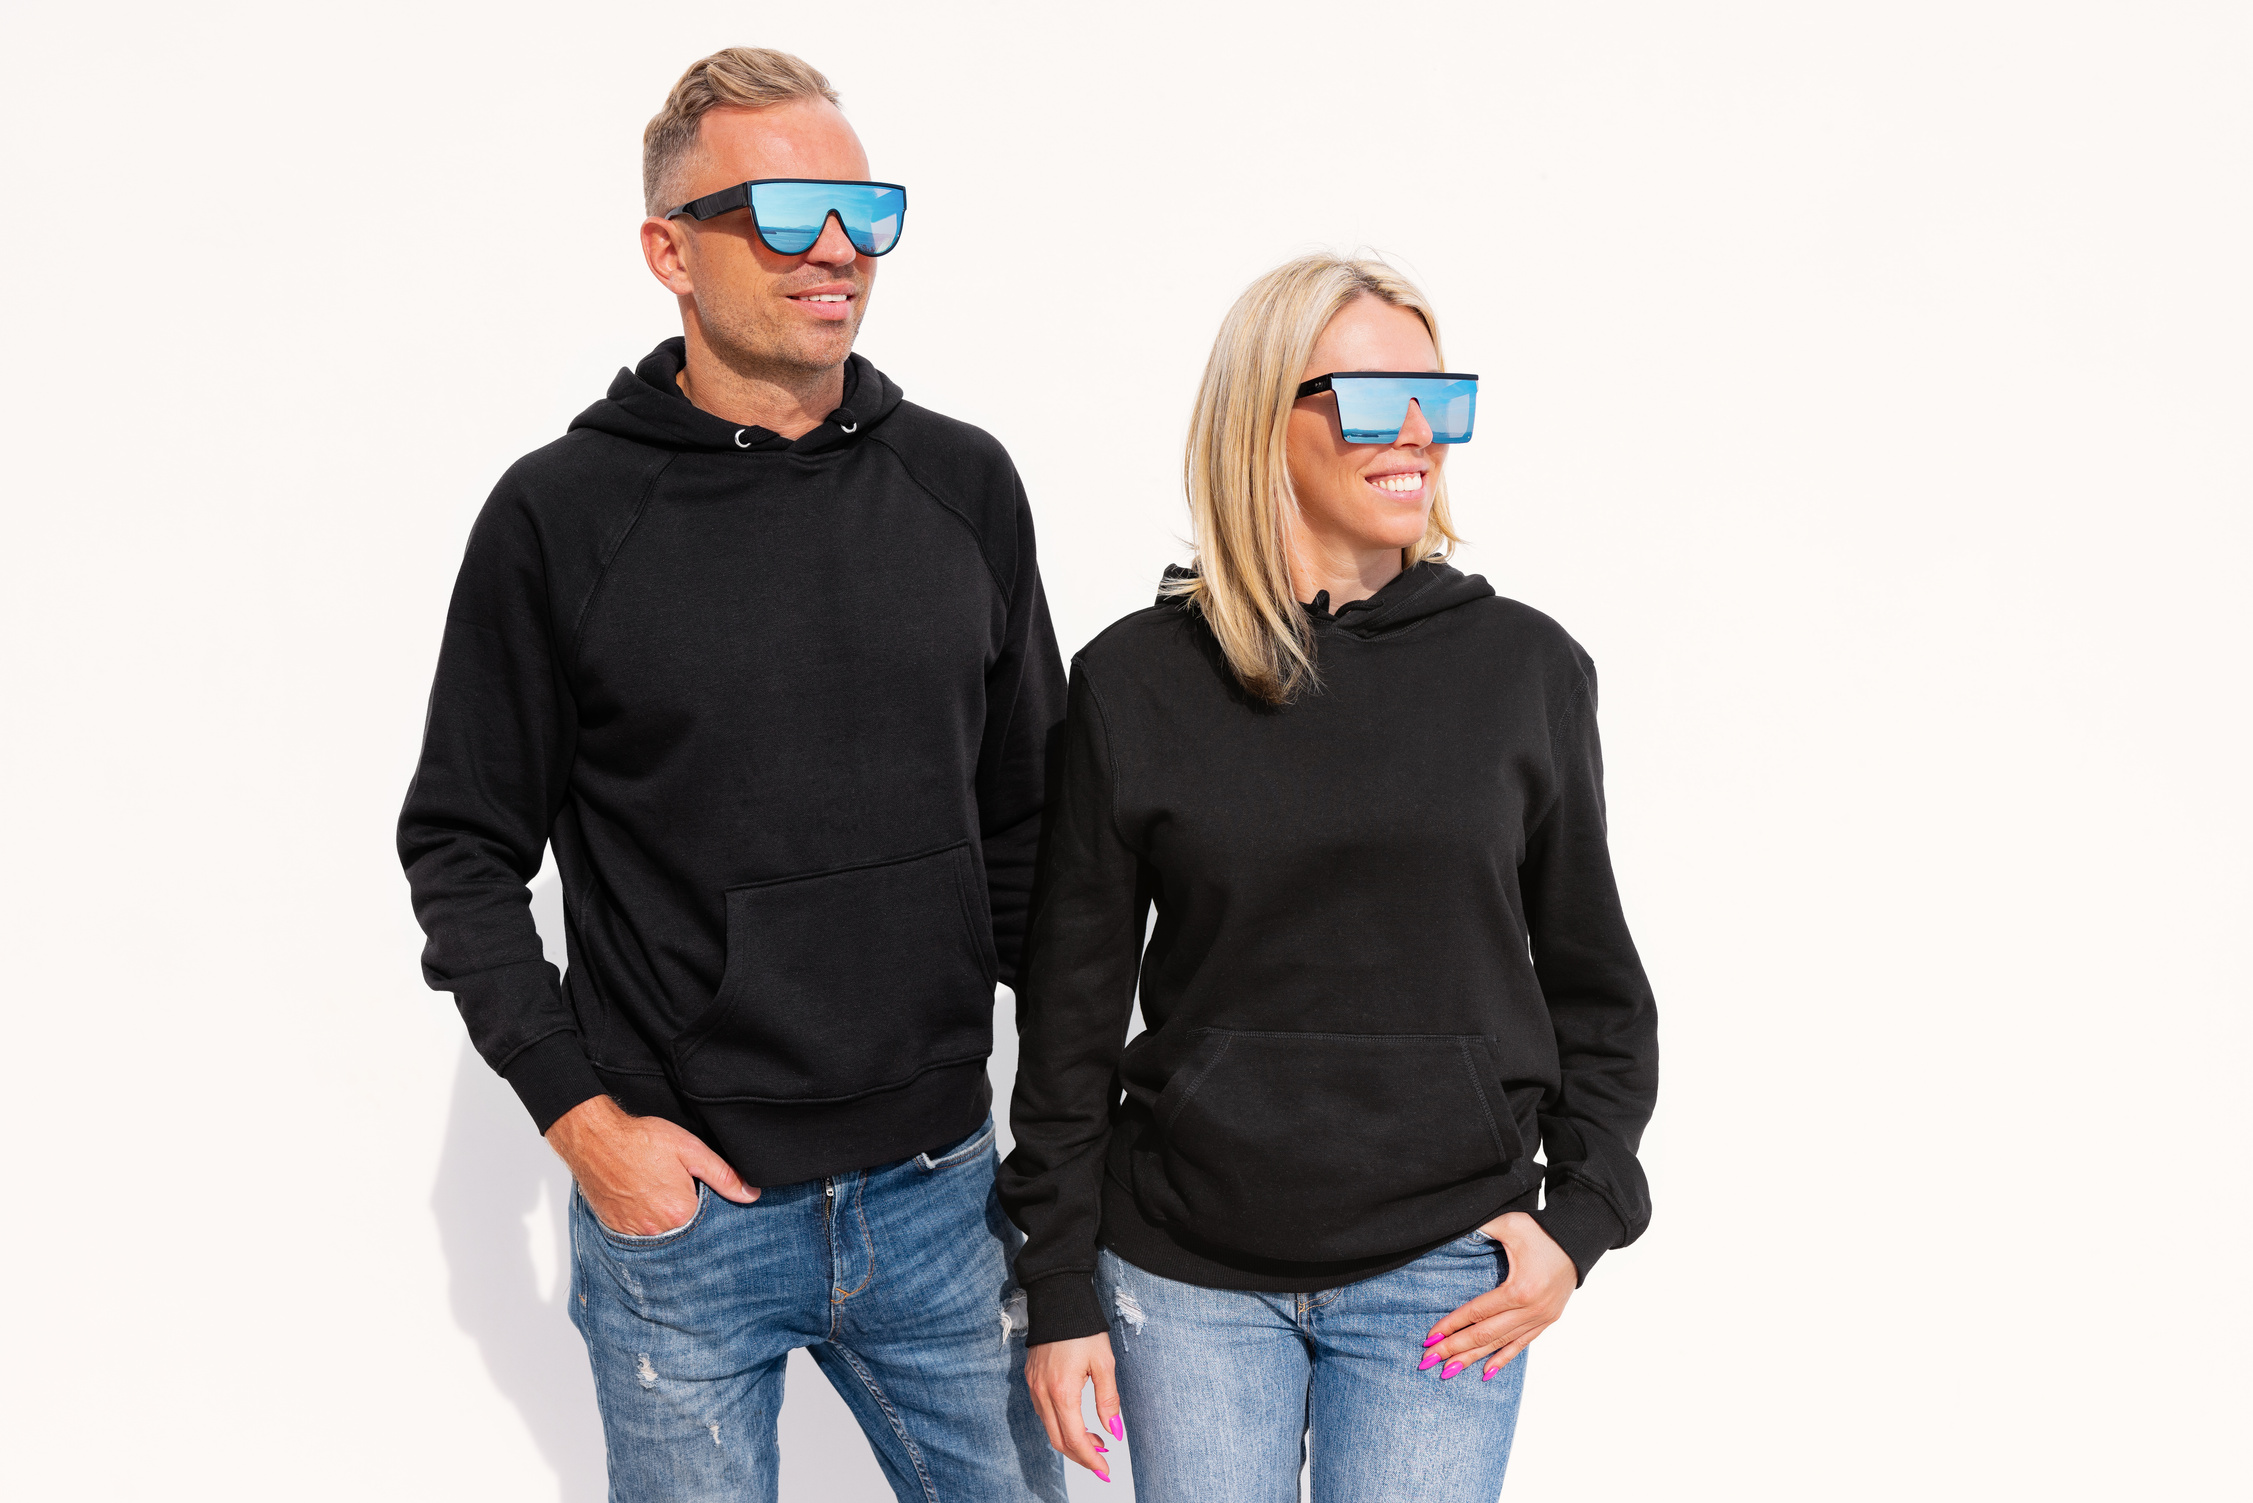 Woman and Man Wearing Black Hoodies, Mockup for Hoody Sweatshirt Design